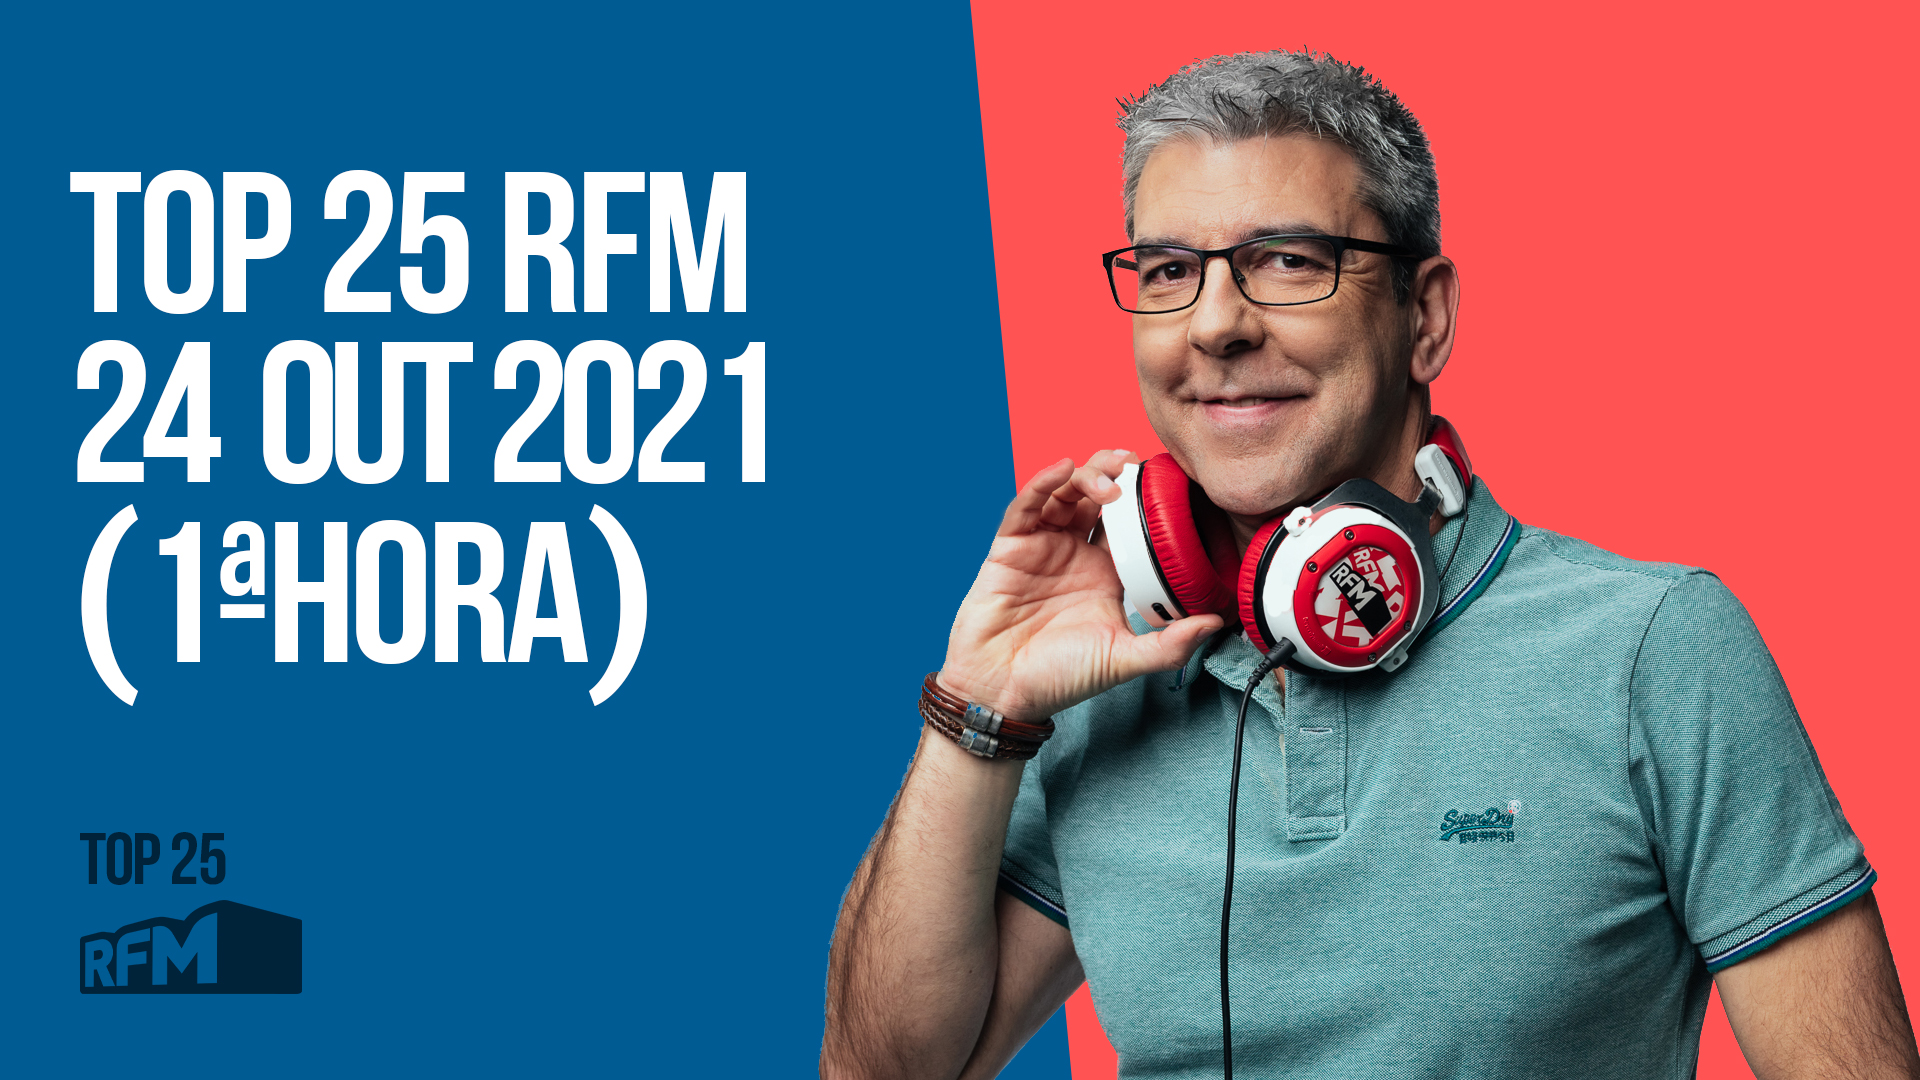 TOP 25 RFM 24 OUTUBRO DE 2021 - 1ª HORA